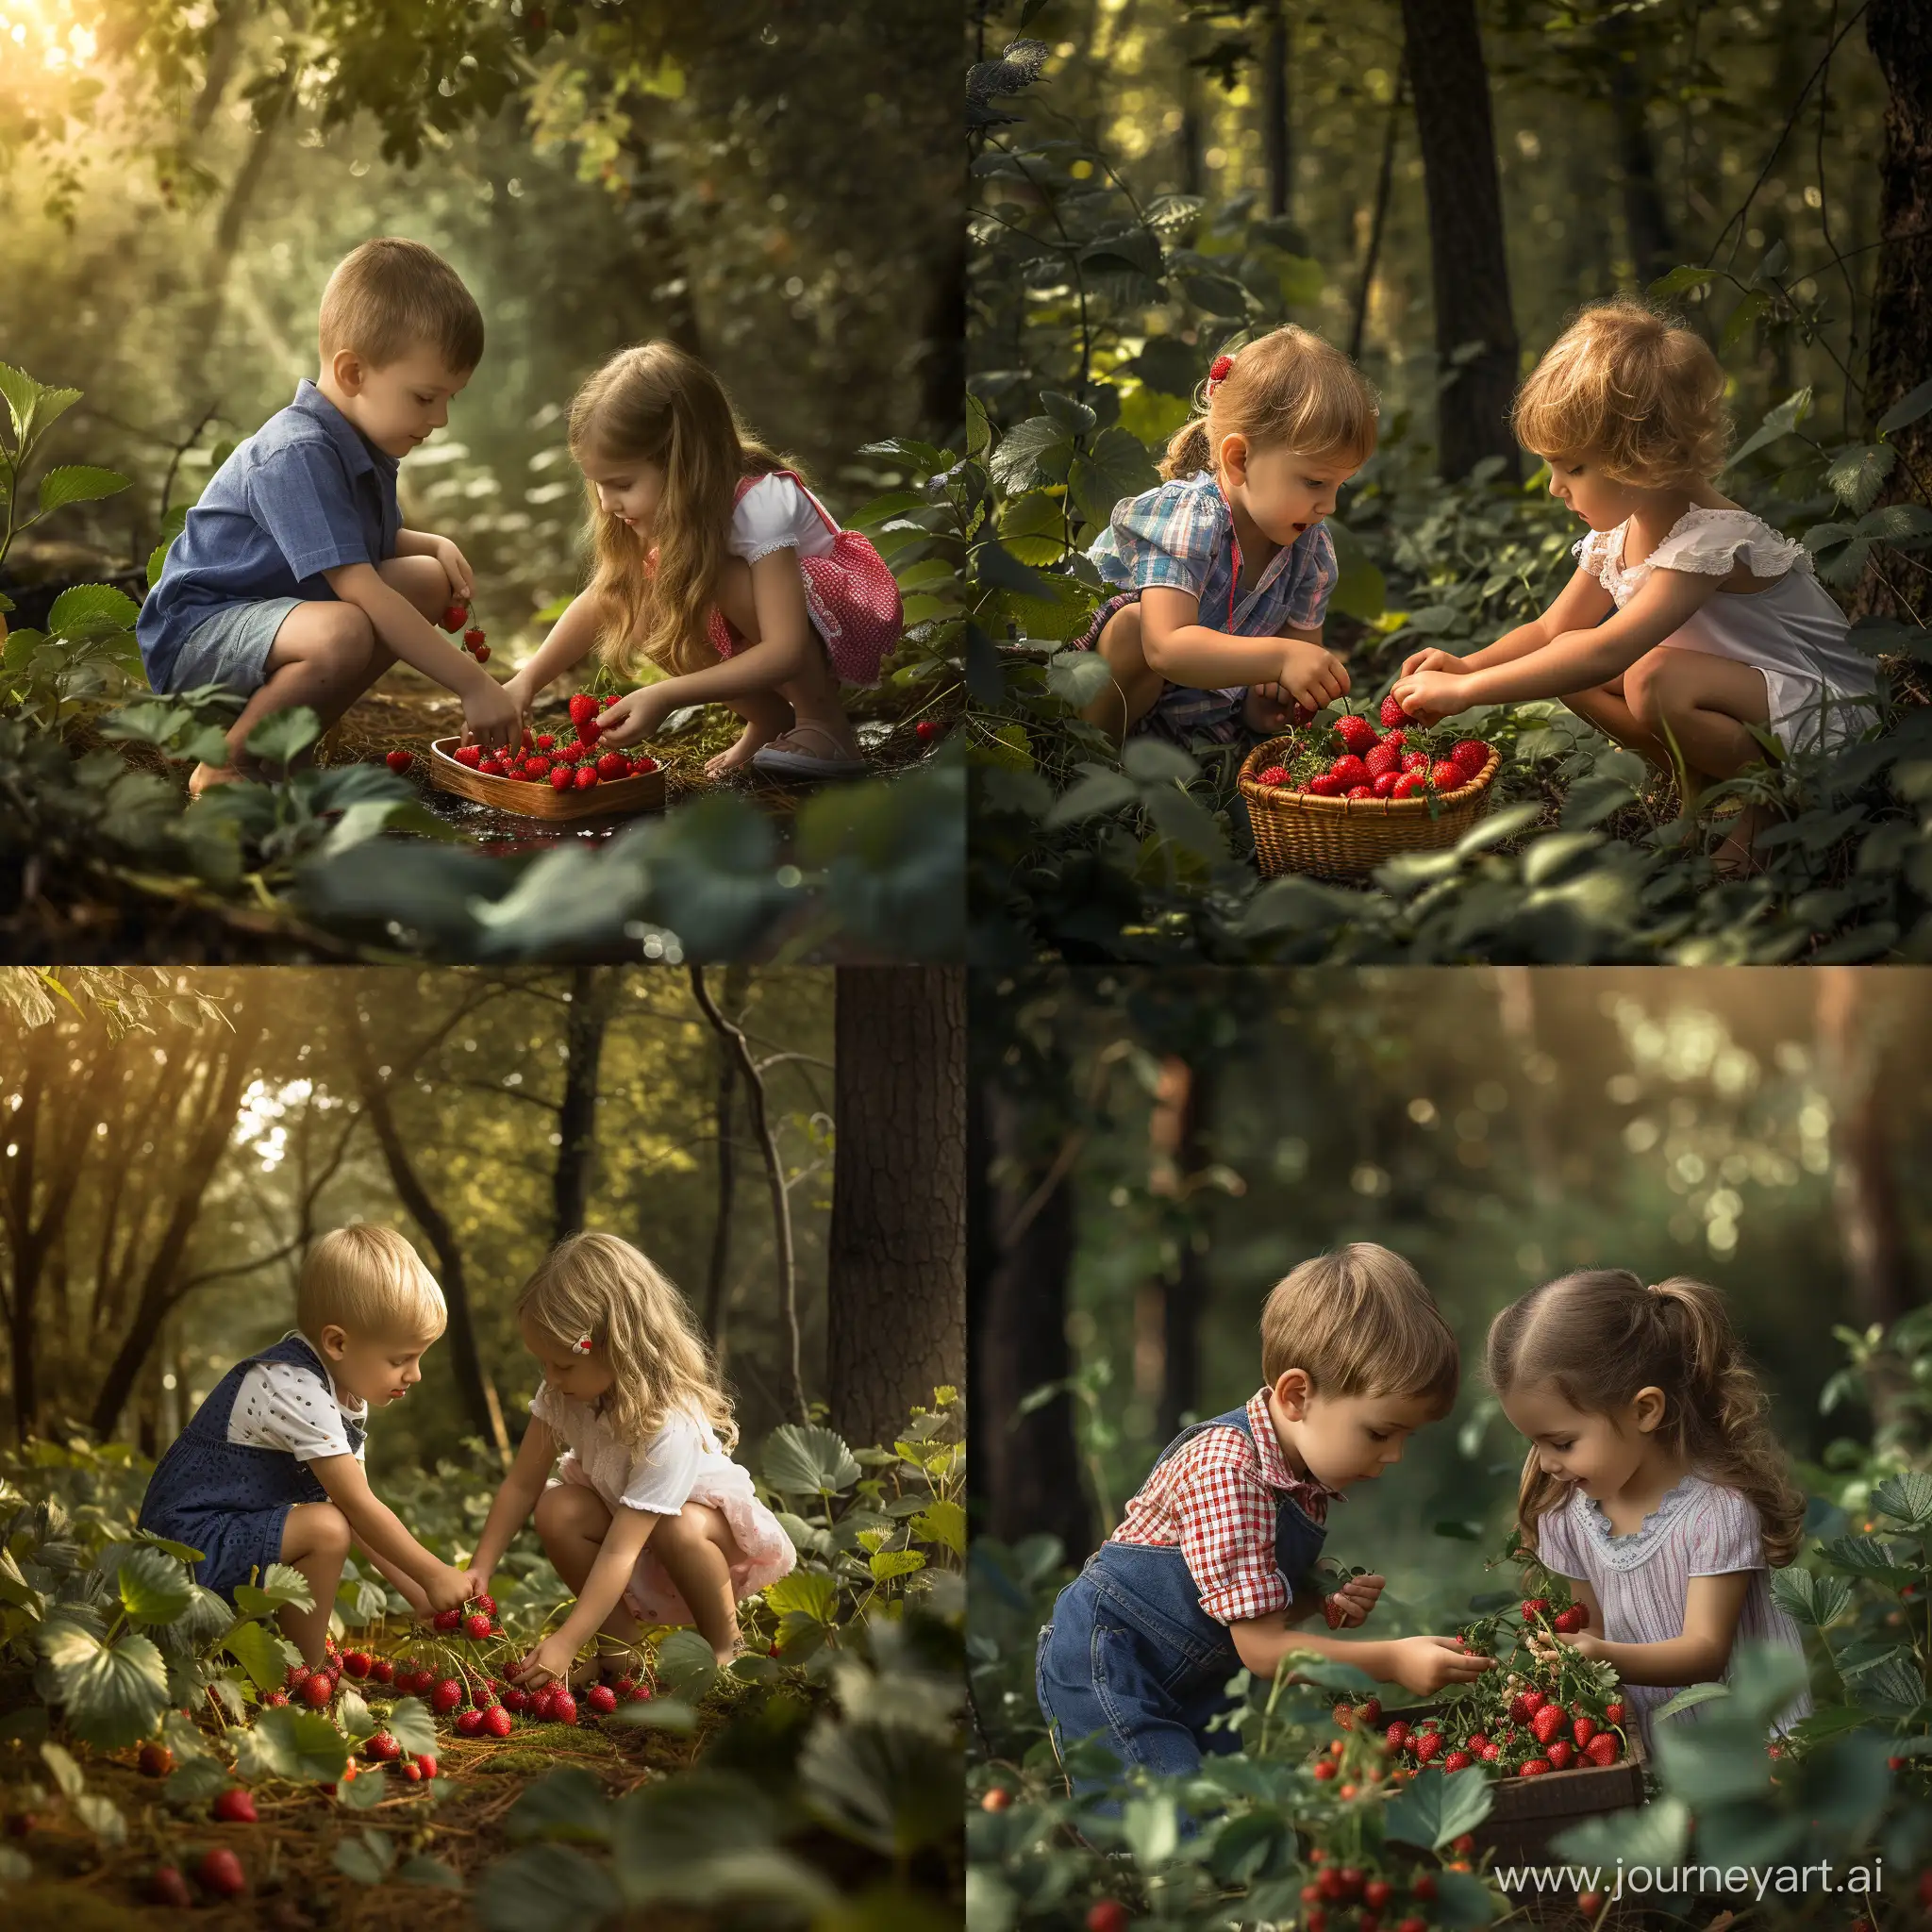 Мальчик и девочка собирают землянику в летнем лесу, фотография, гиперреализм, высокое разрешение